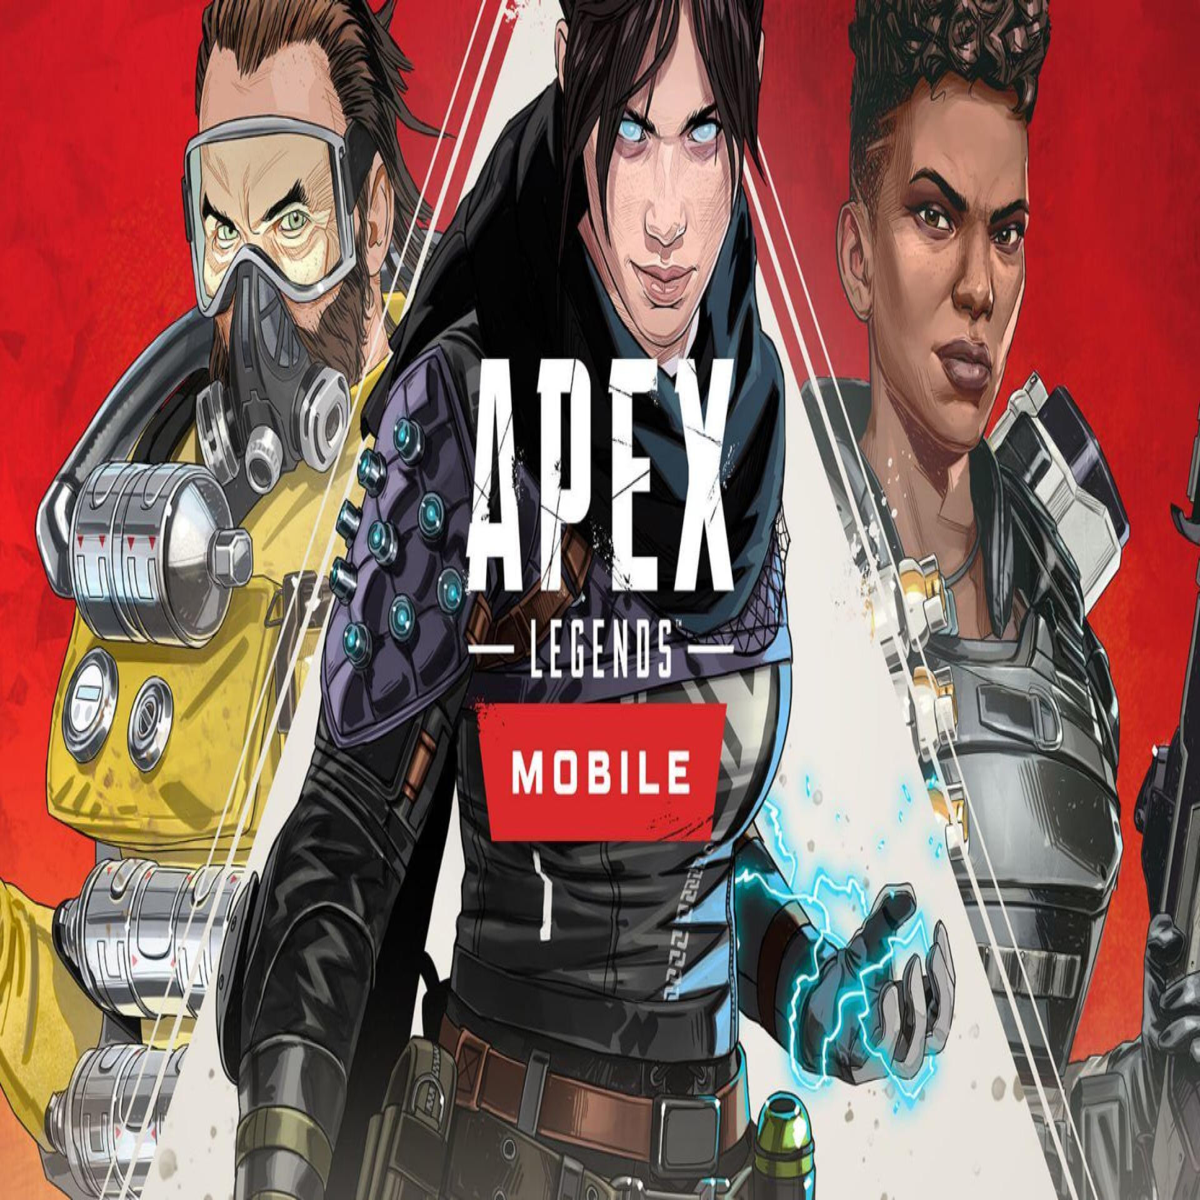 Lançamentos: Apex Legends Mobile é destaque da semana